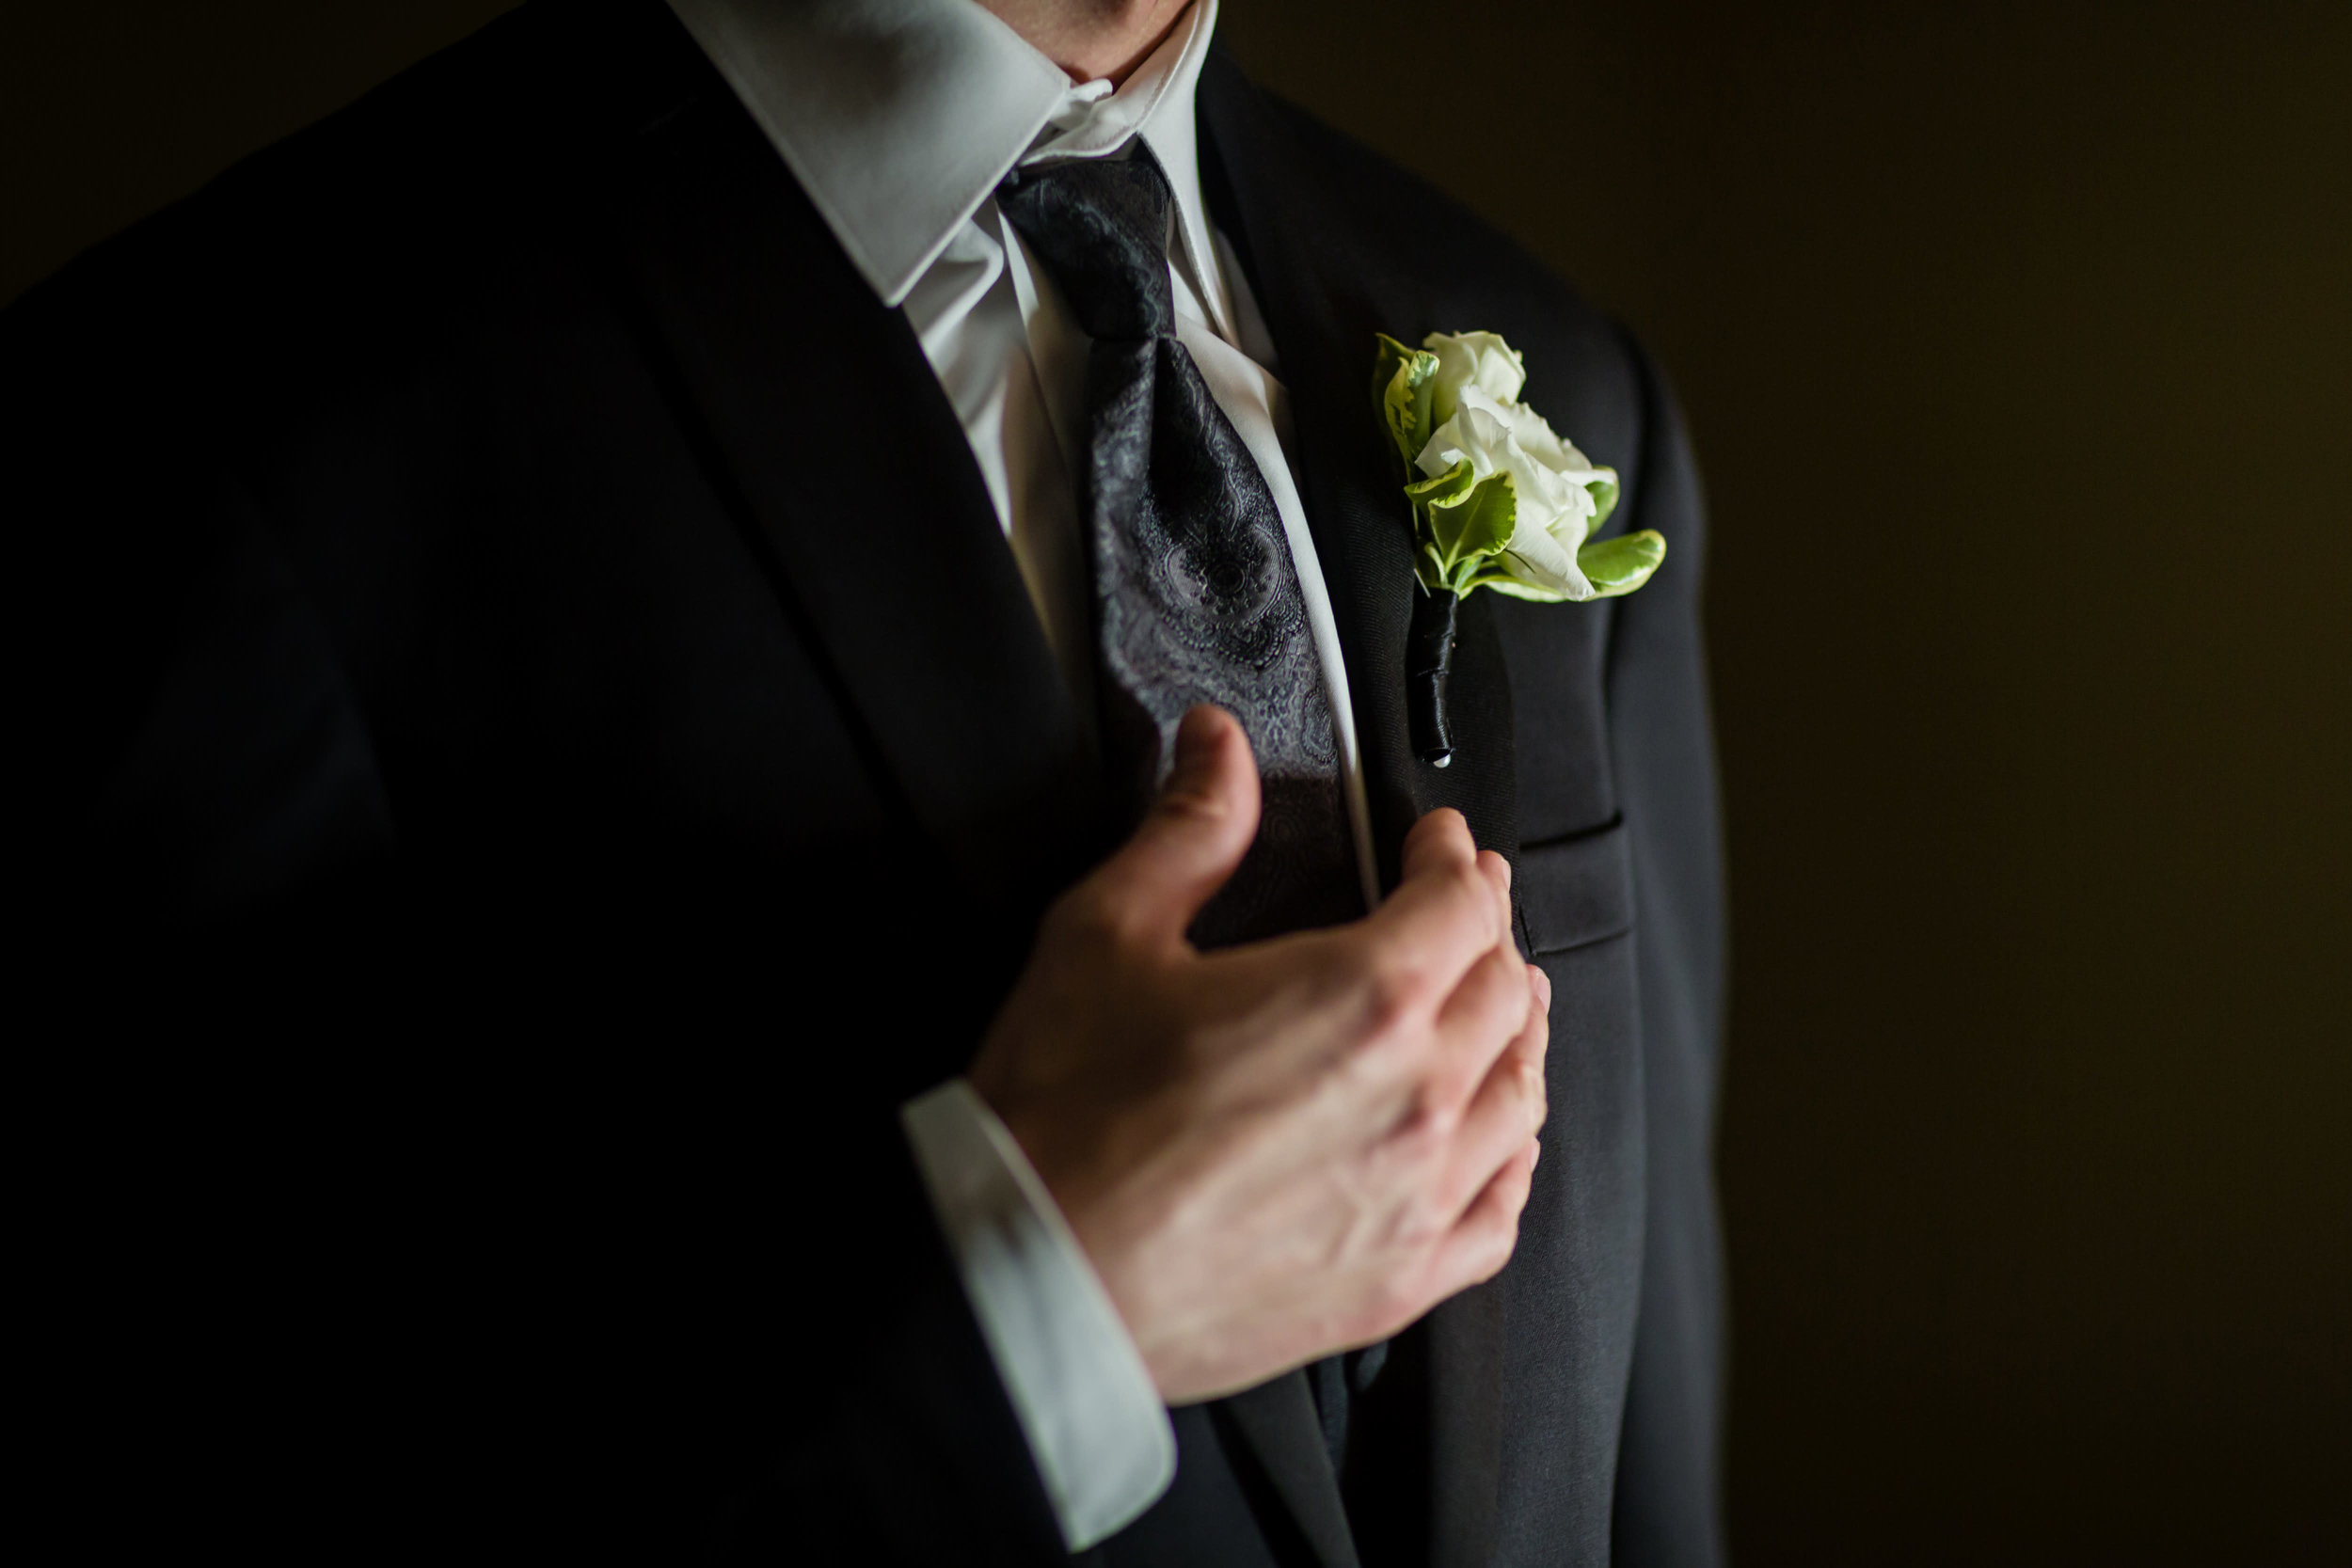 Omni William Penn Hotel Pittsburgh Wedding - The Overwhelmed Bride Wedding Blog